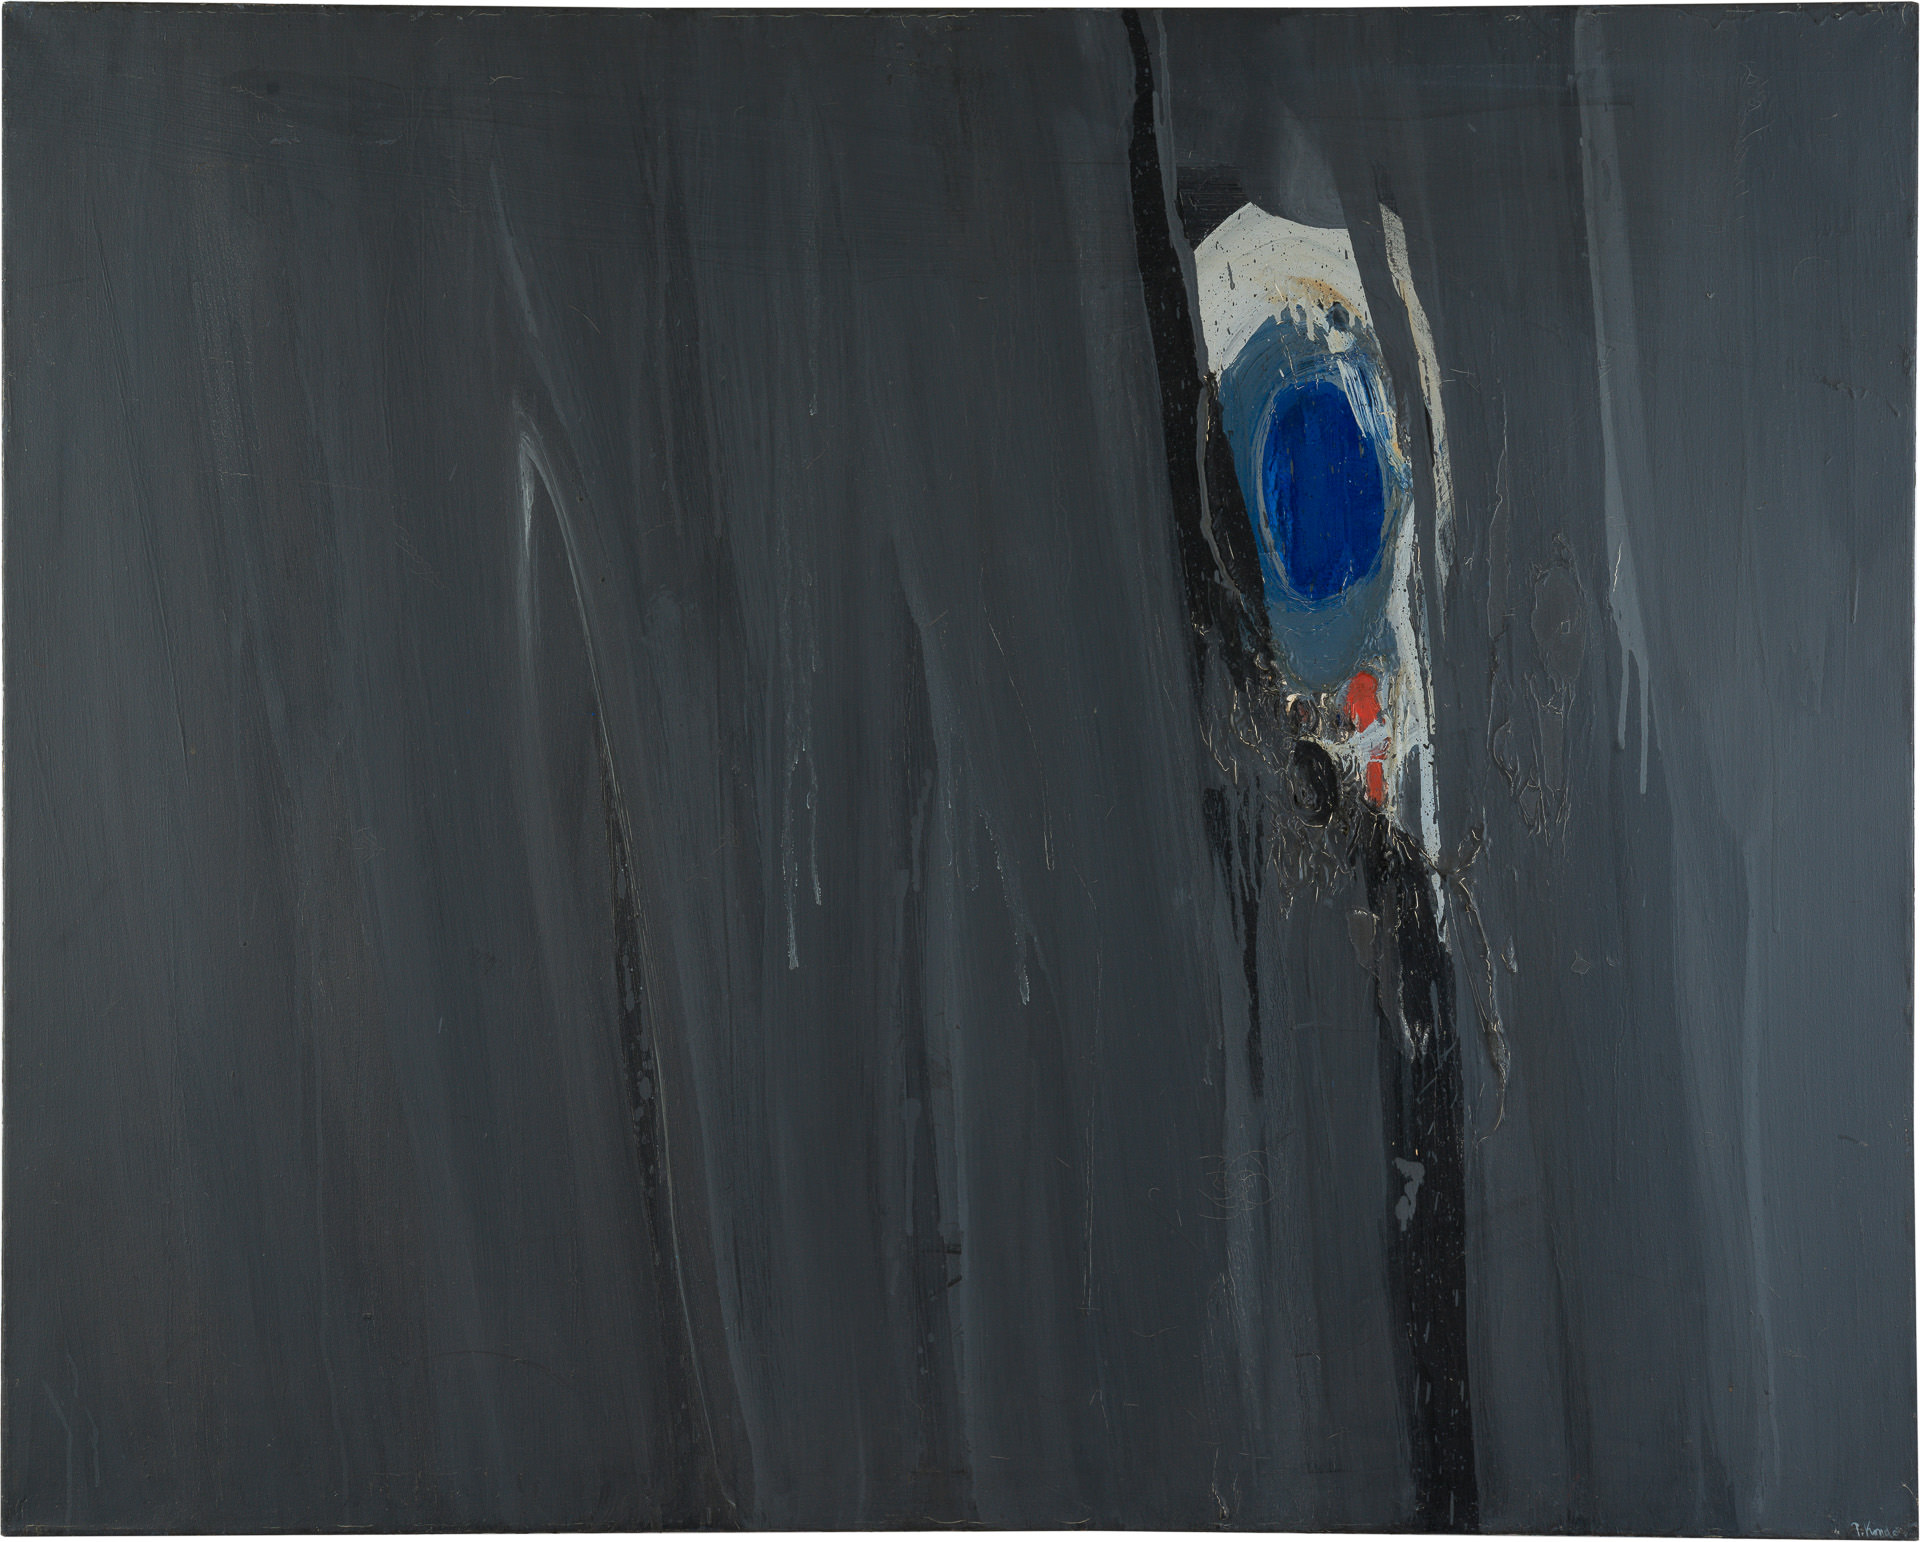 近藤竜男〈Gray Image〉, 油彩・カンヴァス, 102.0×127.2, 日本橋画廊（ニューヨーク）個展, 1961